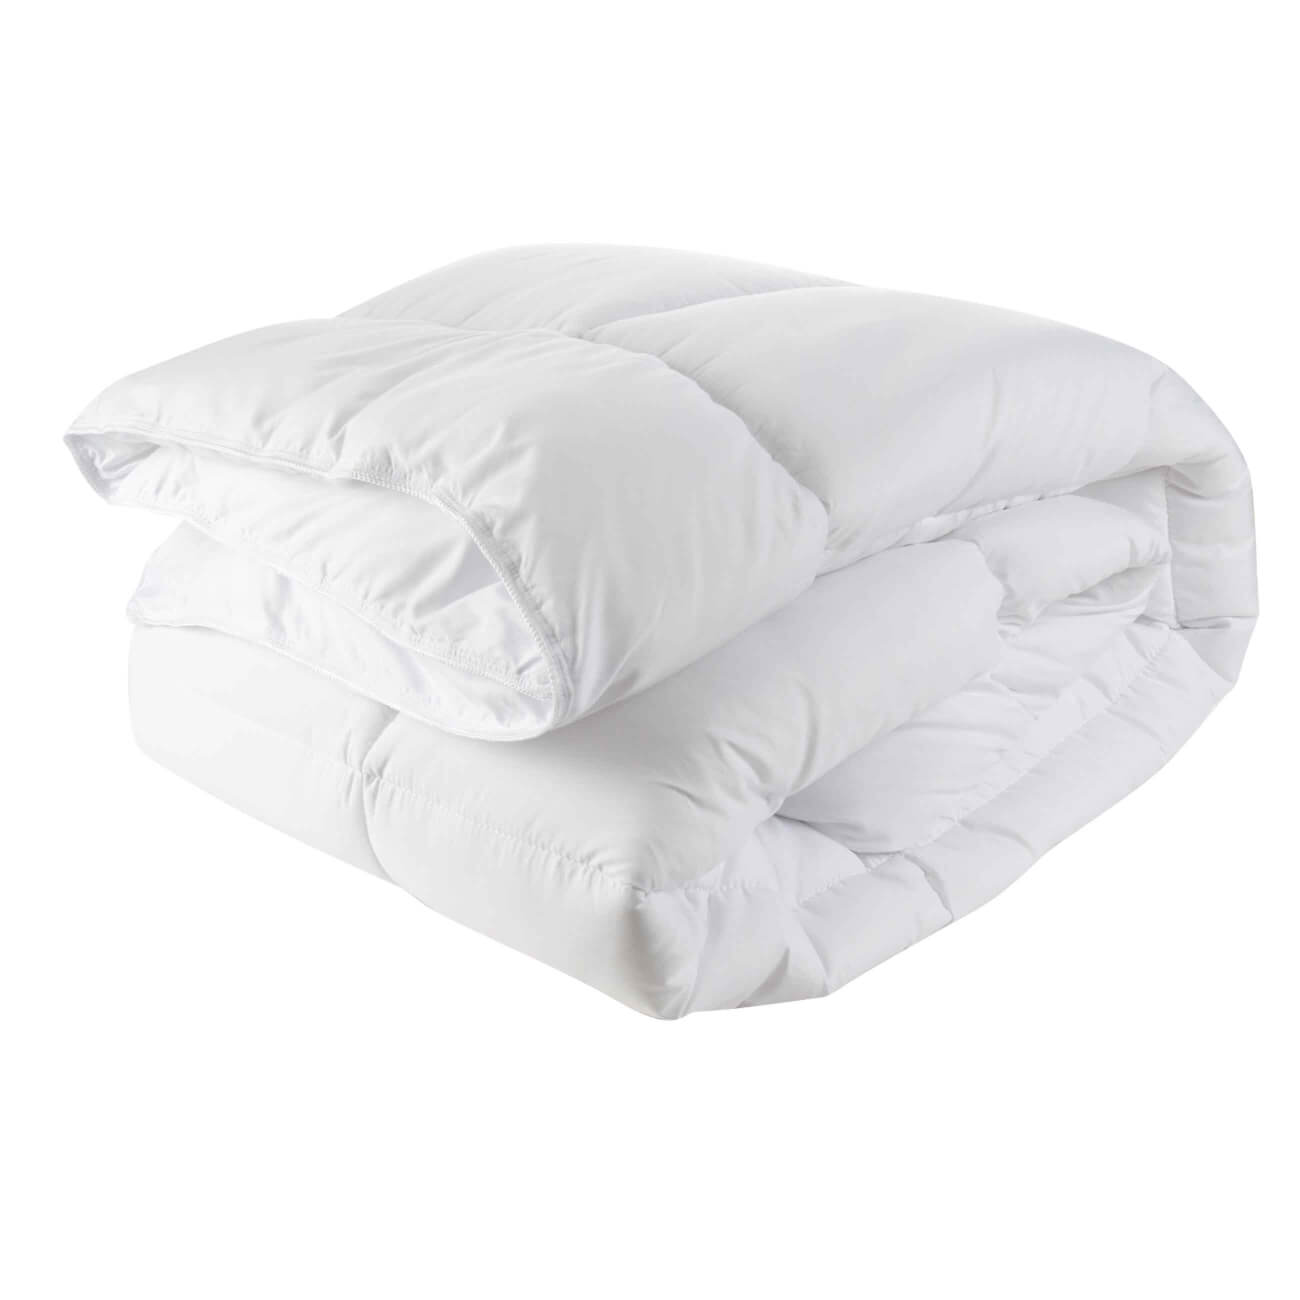 Одеяло, 140х200 см, микрофибра, Simply soft